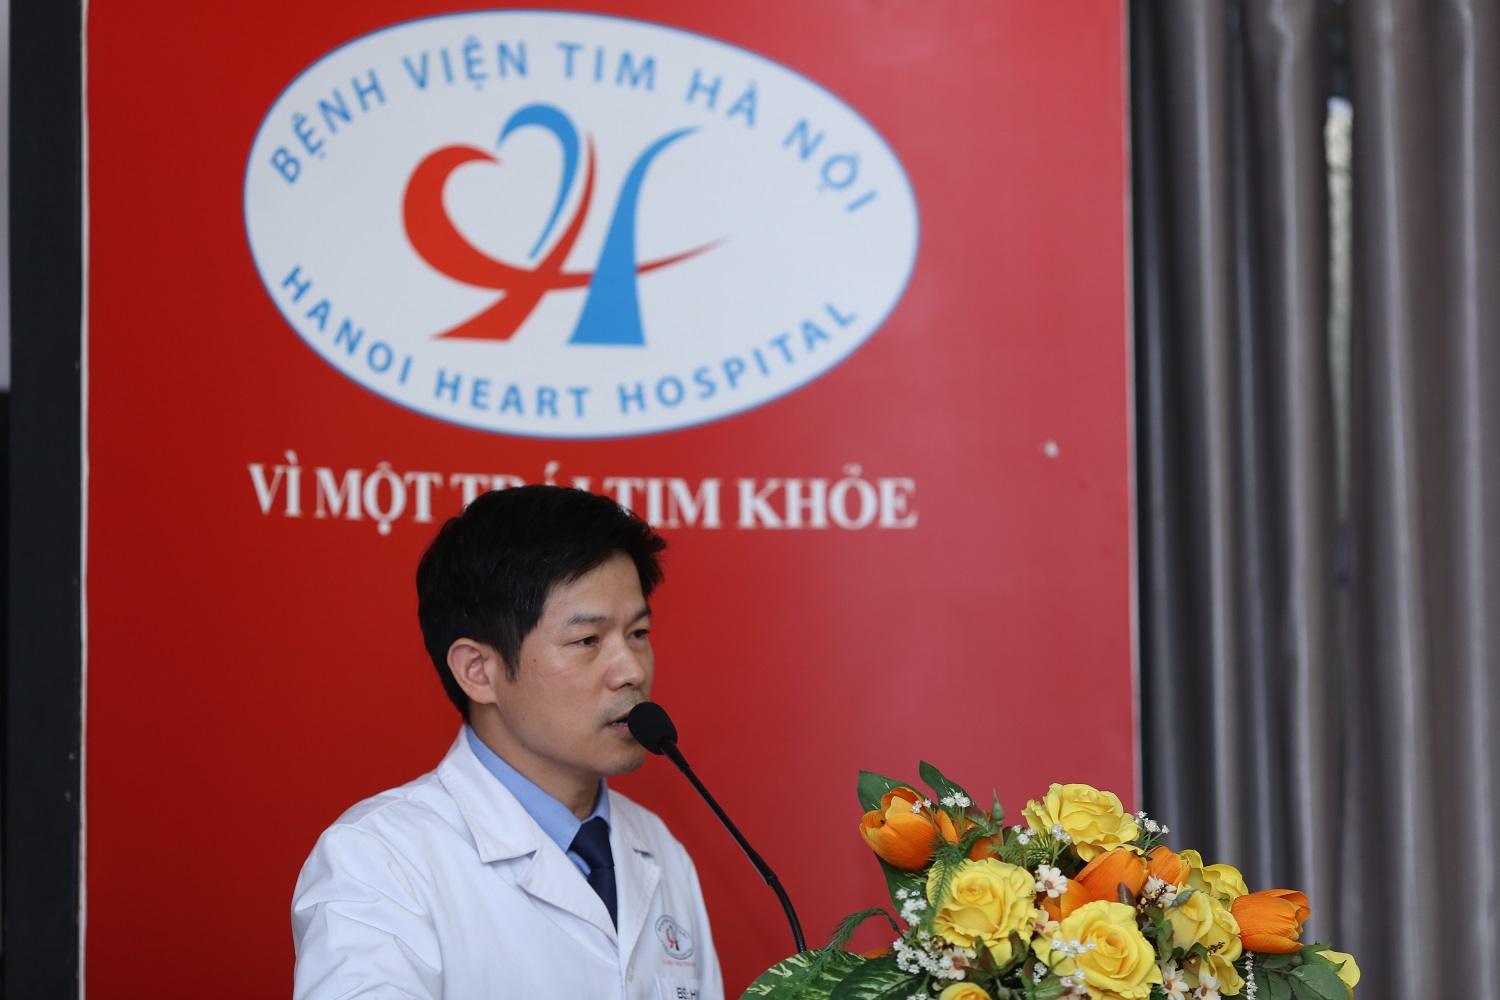 Tiến sĩ Nguyễn Sinh Hiền – Phó Giám đốc bệnh viện tim Hà Nội phát biểu tại chương trình